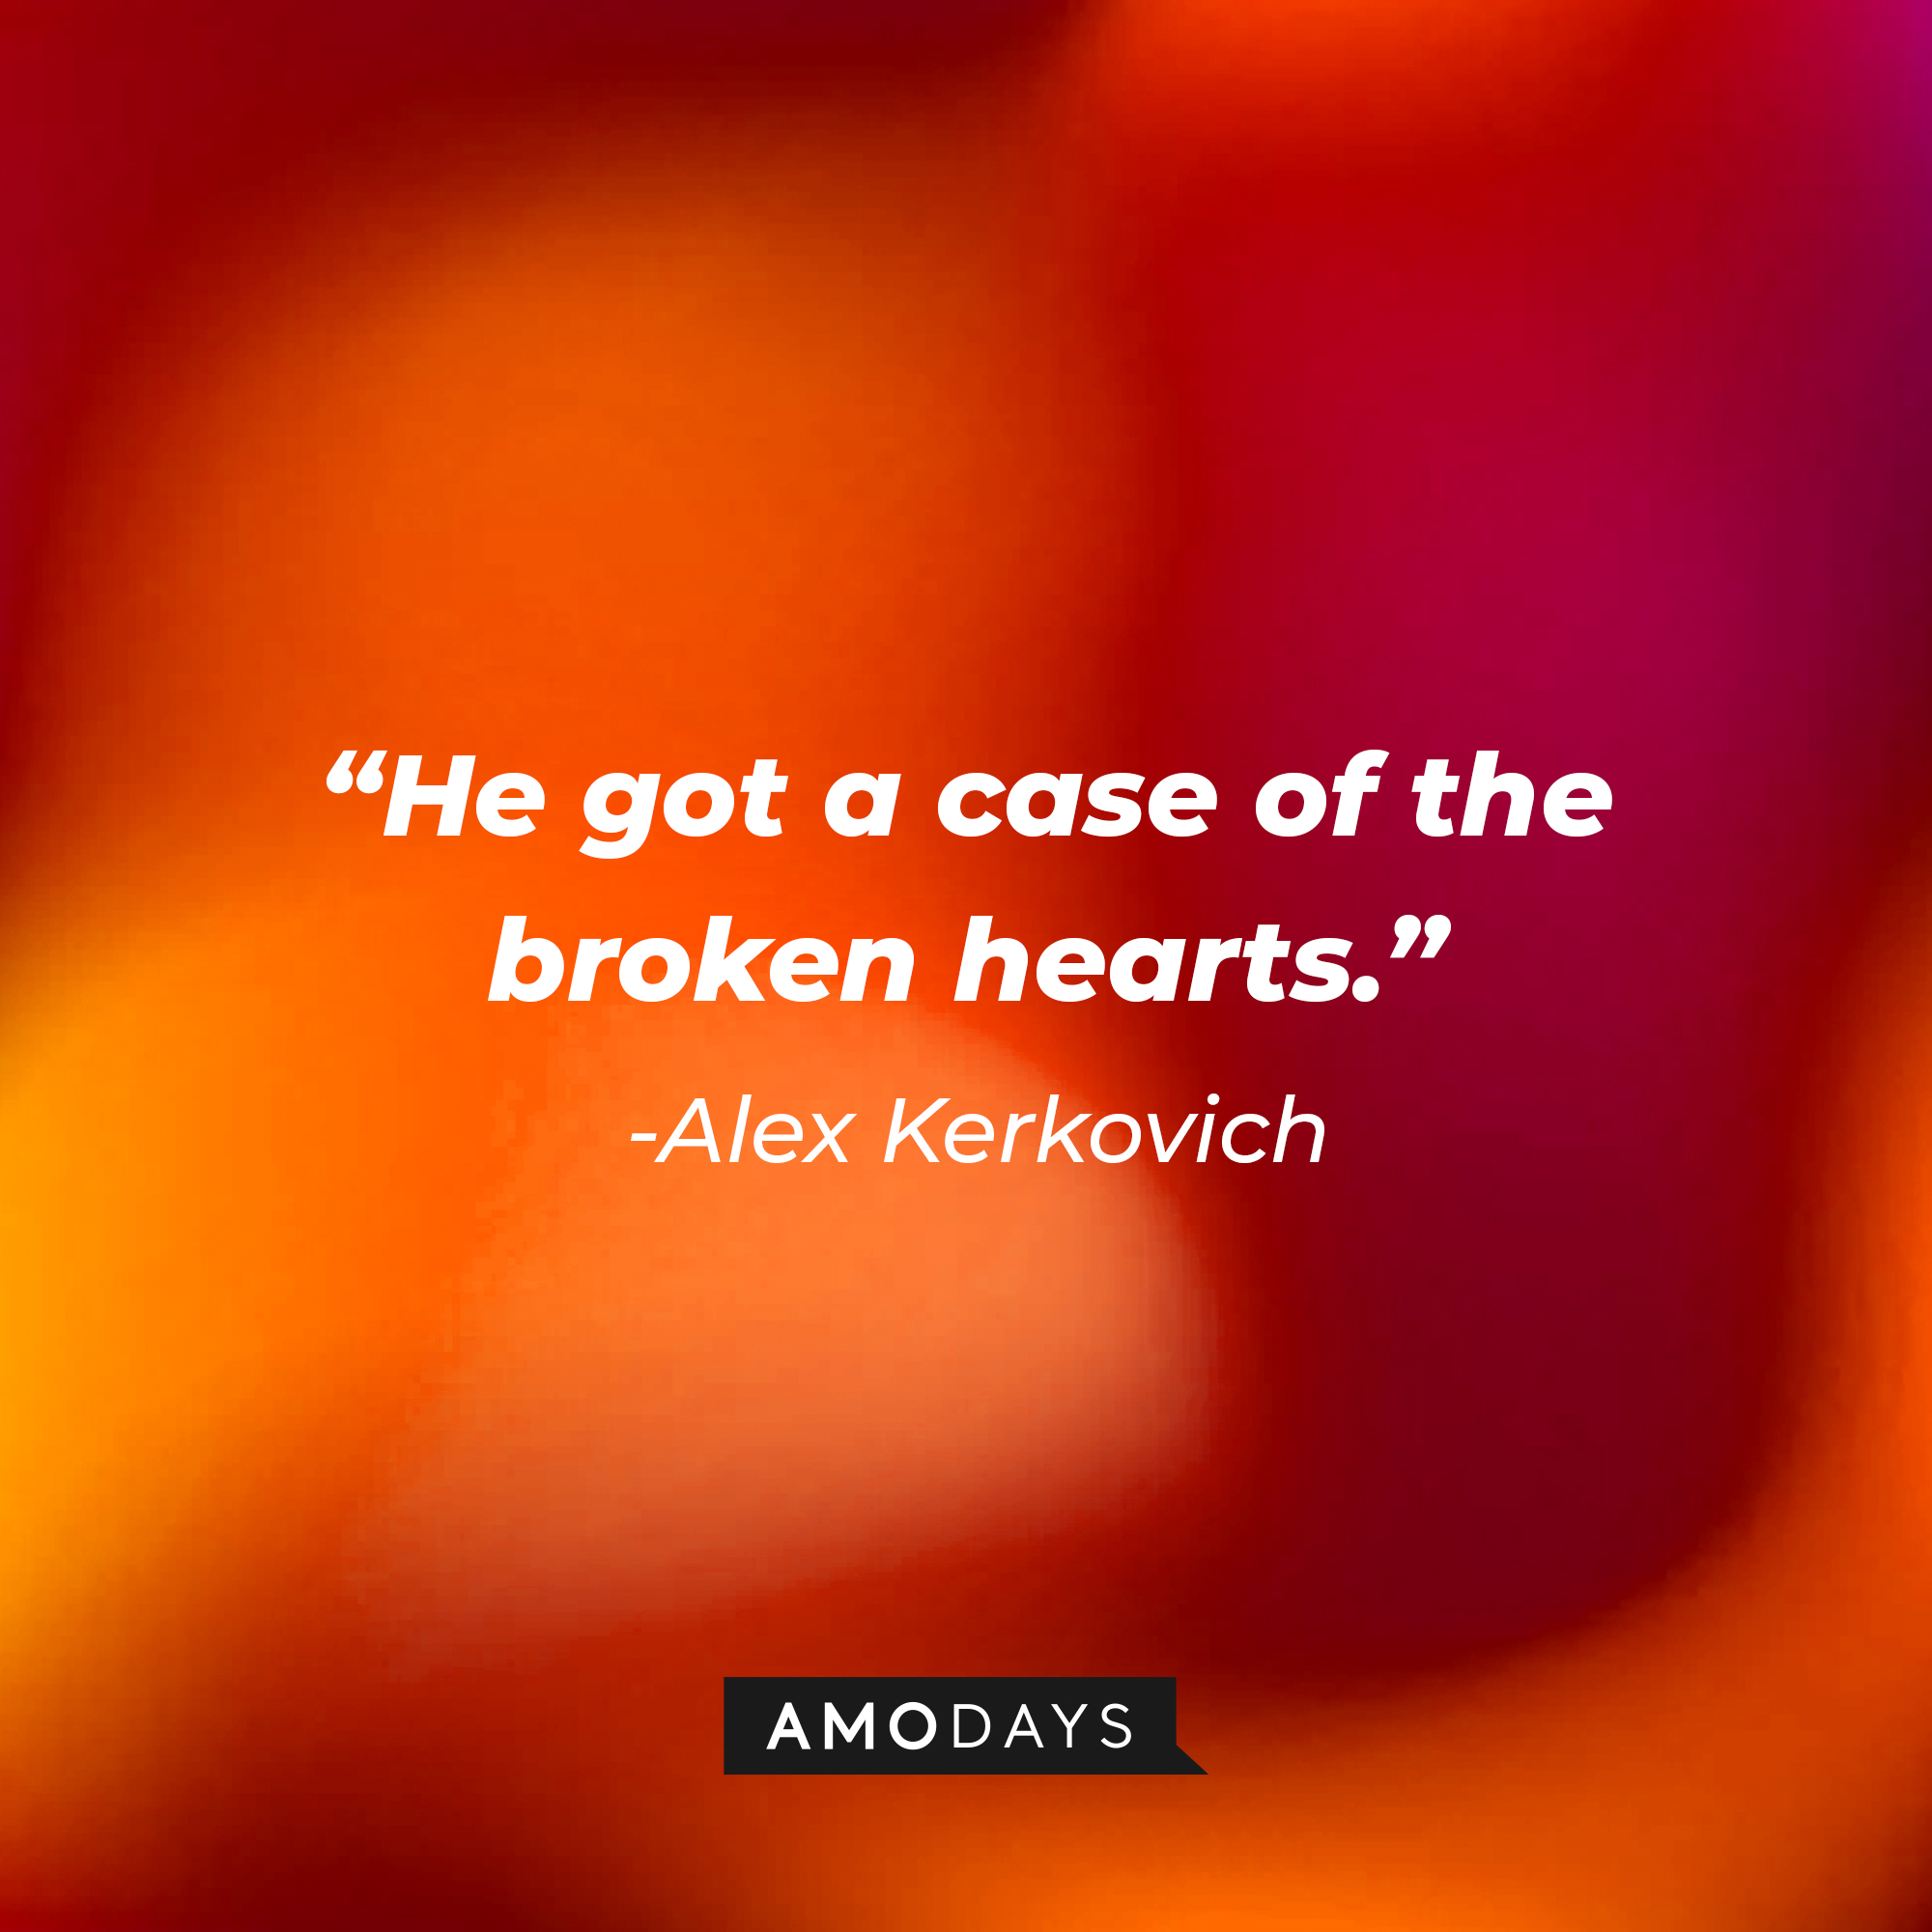 Alex Kerkovich's quote, "He got a case of the broken hearts." | Source: Facebook/HappyEndings